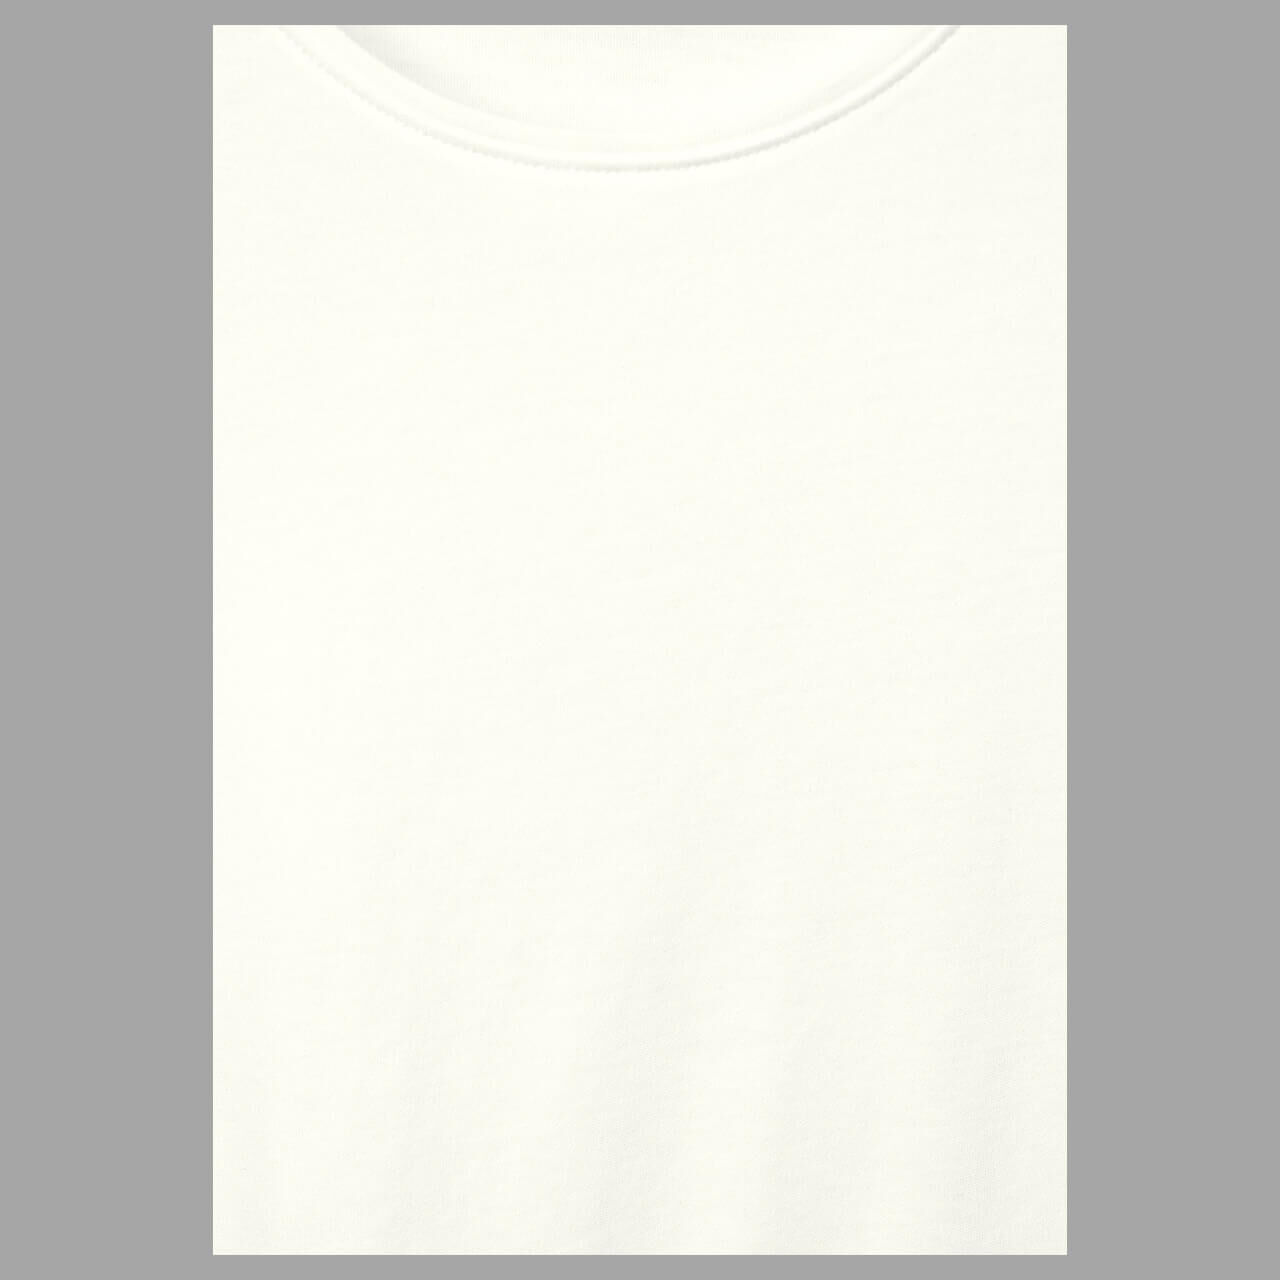 Cecil Lena T-Shirt vanilla white